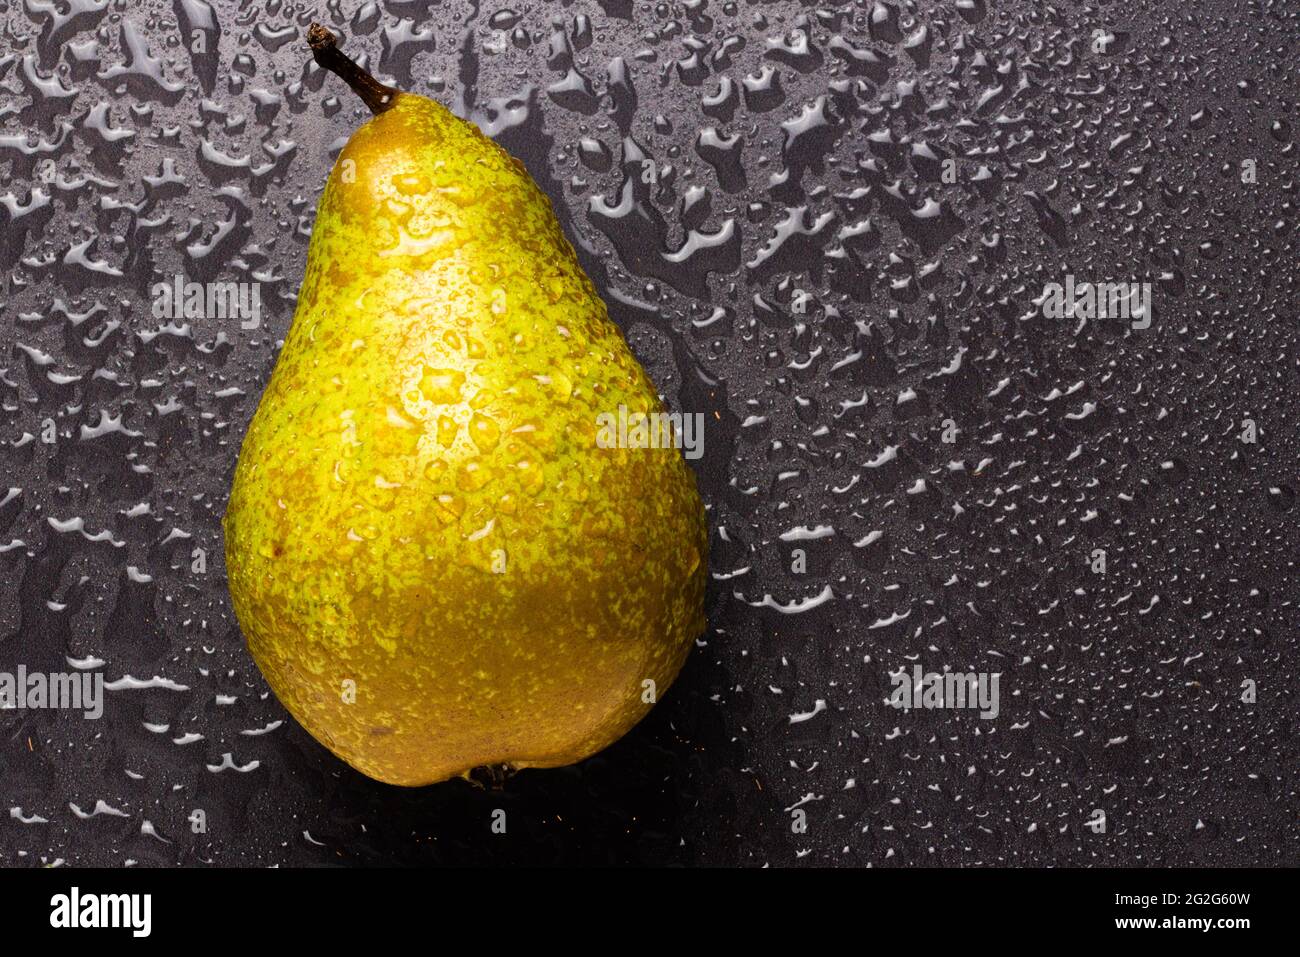 Pear fruit isolated on wet black background Stock Photo